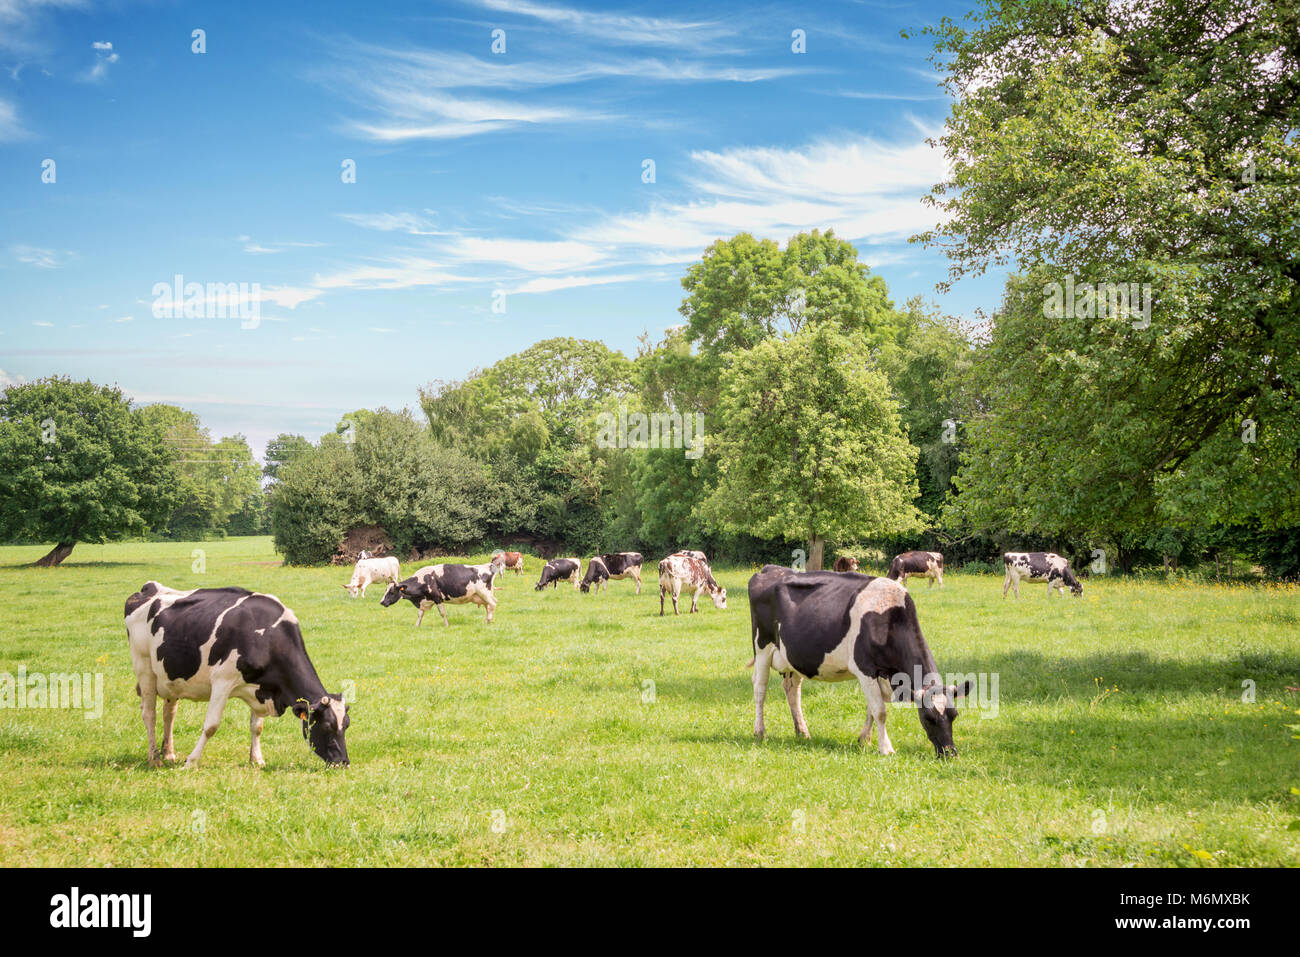 Vaches normandes paissant sur champ vert herbeux avec des arbres sur une journée ensoleillée en Normandie, France. Paysage de campagne d'été et des pâturages pour les vaches Banque D'Images